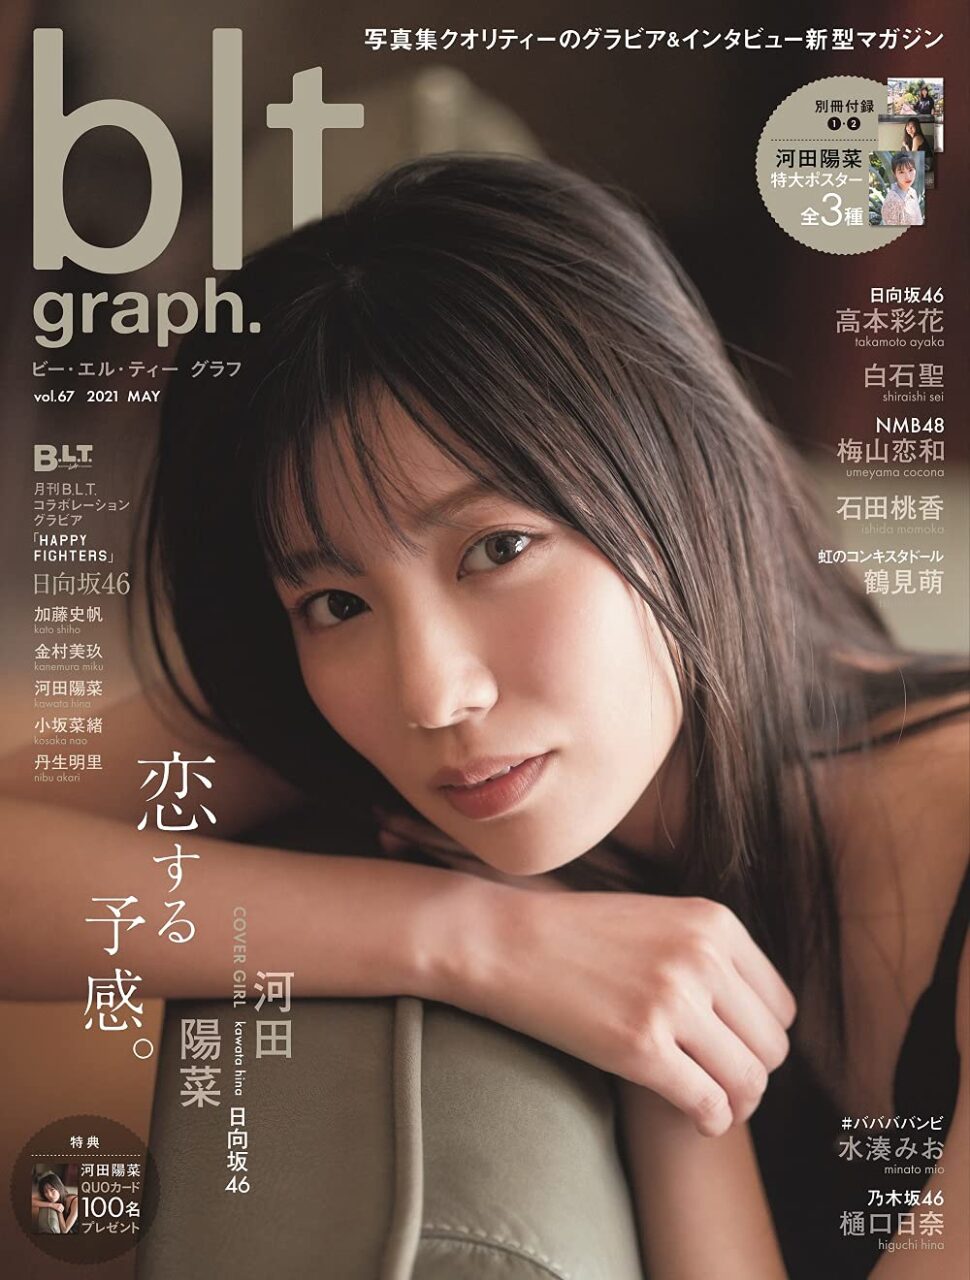 日向坂46 河田陽菜「blt graph. vol.67」表紙解禁！5/19発売！